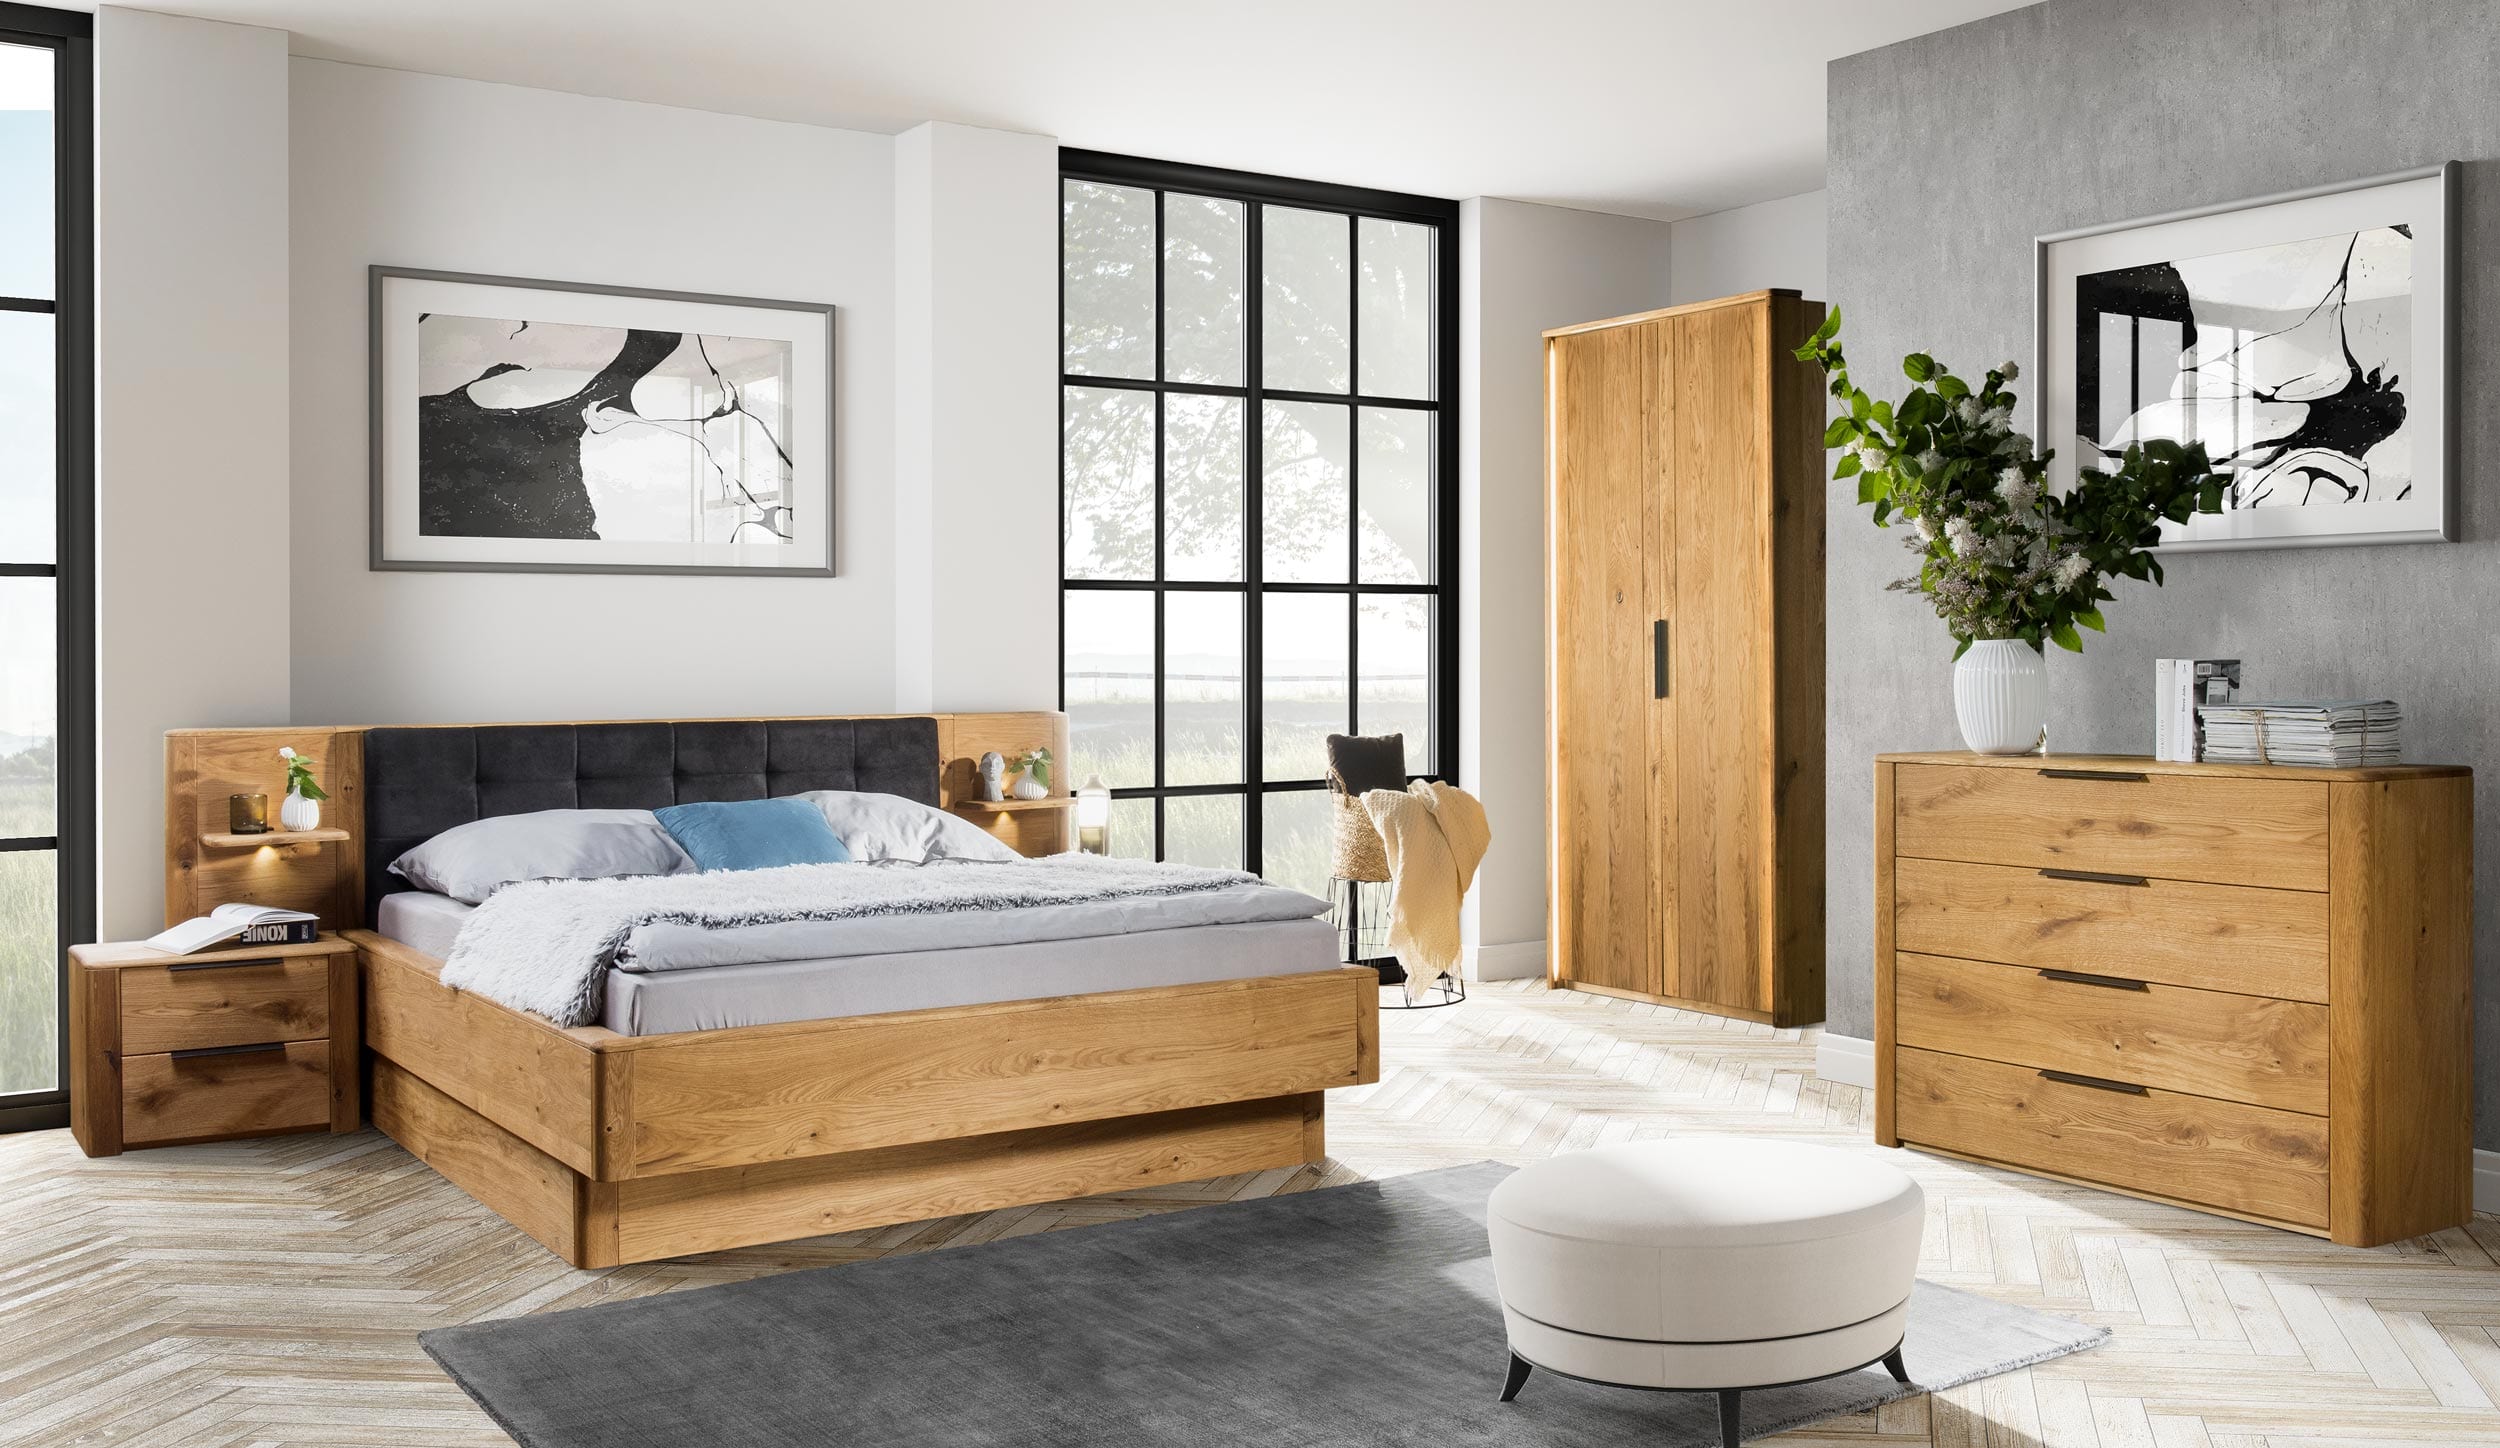 Sypialnia drewniana dębowa mała zz dwudrzwiową szafa